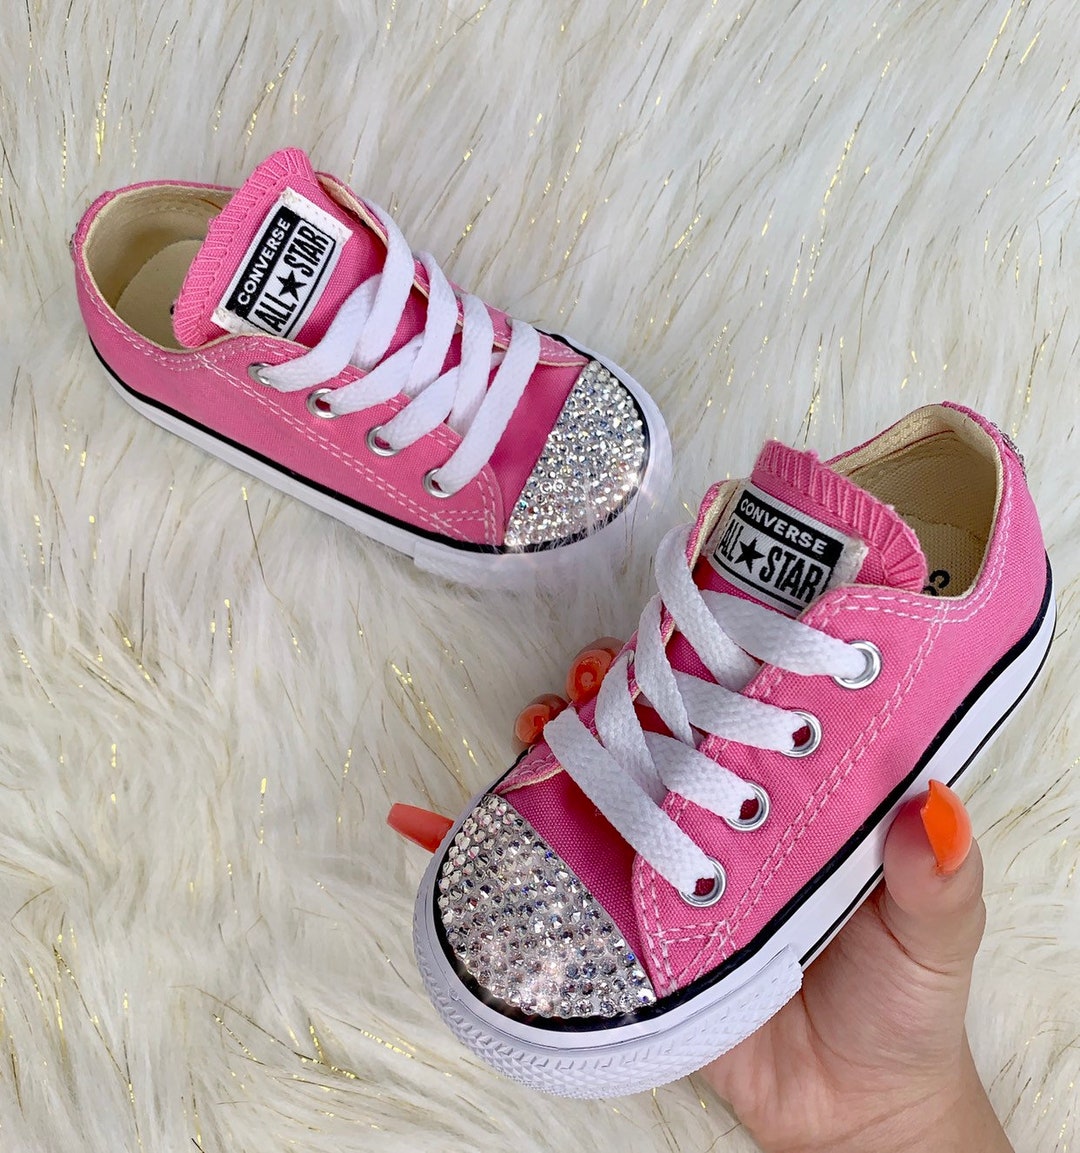 Swarovski Pink Converse Baby Bling Toddler Sneakers Chucks - Etsy